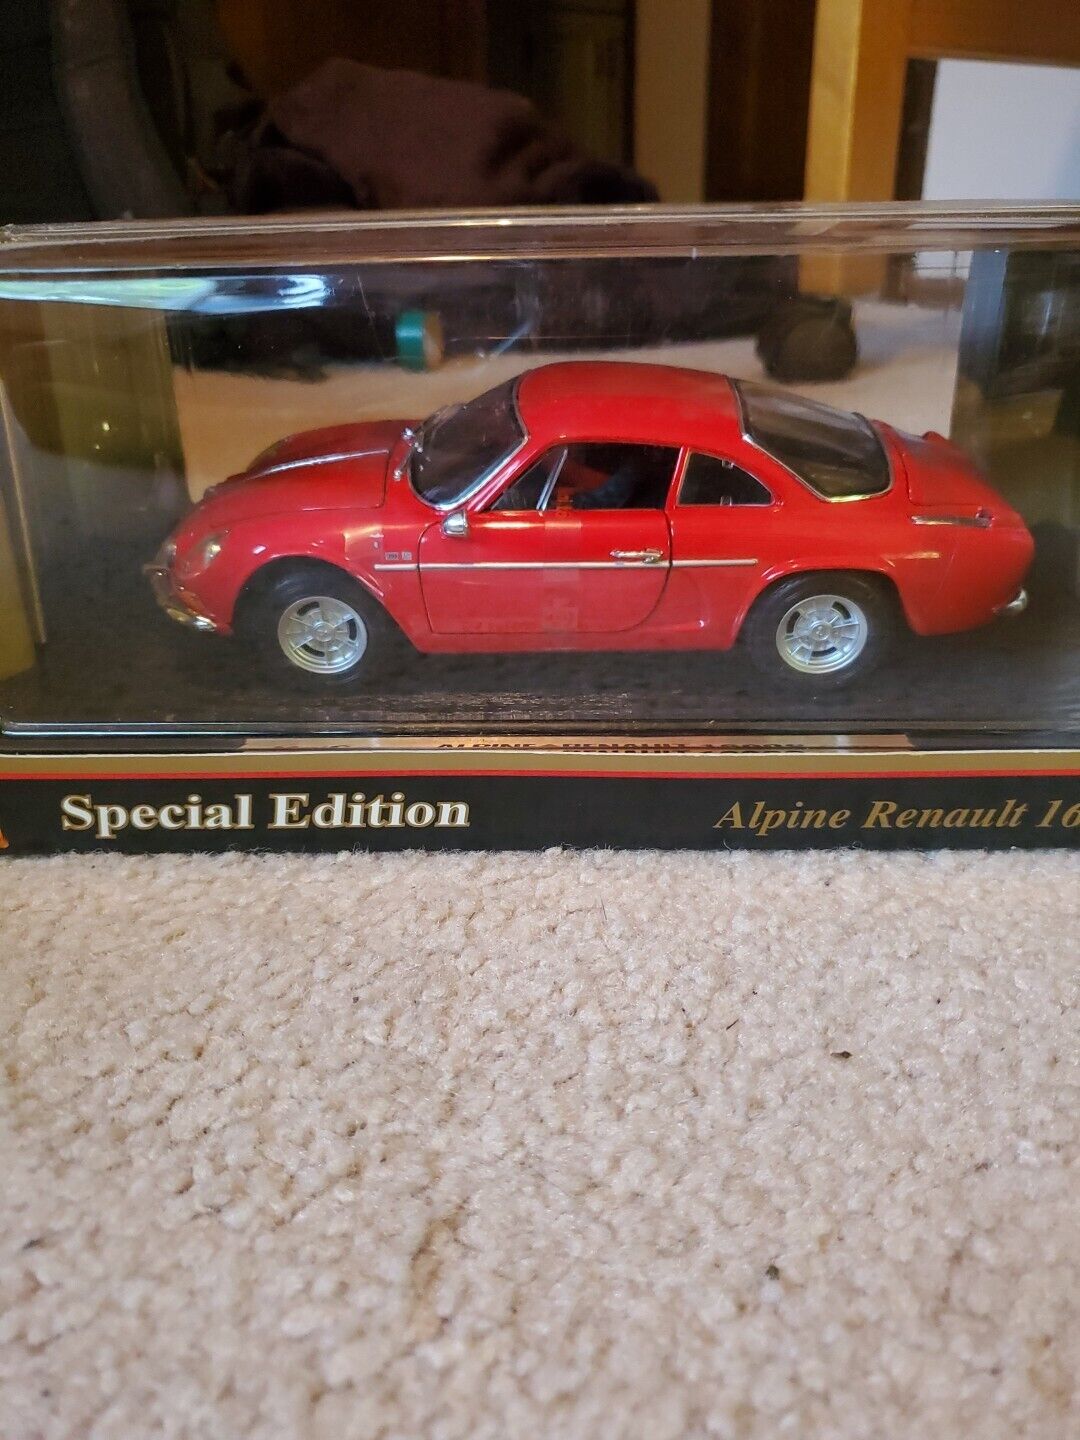 Maisto- Special Edition- Red 1971 Alpine Renault 1600S -1:18 Die Cast